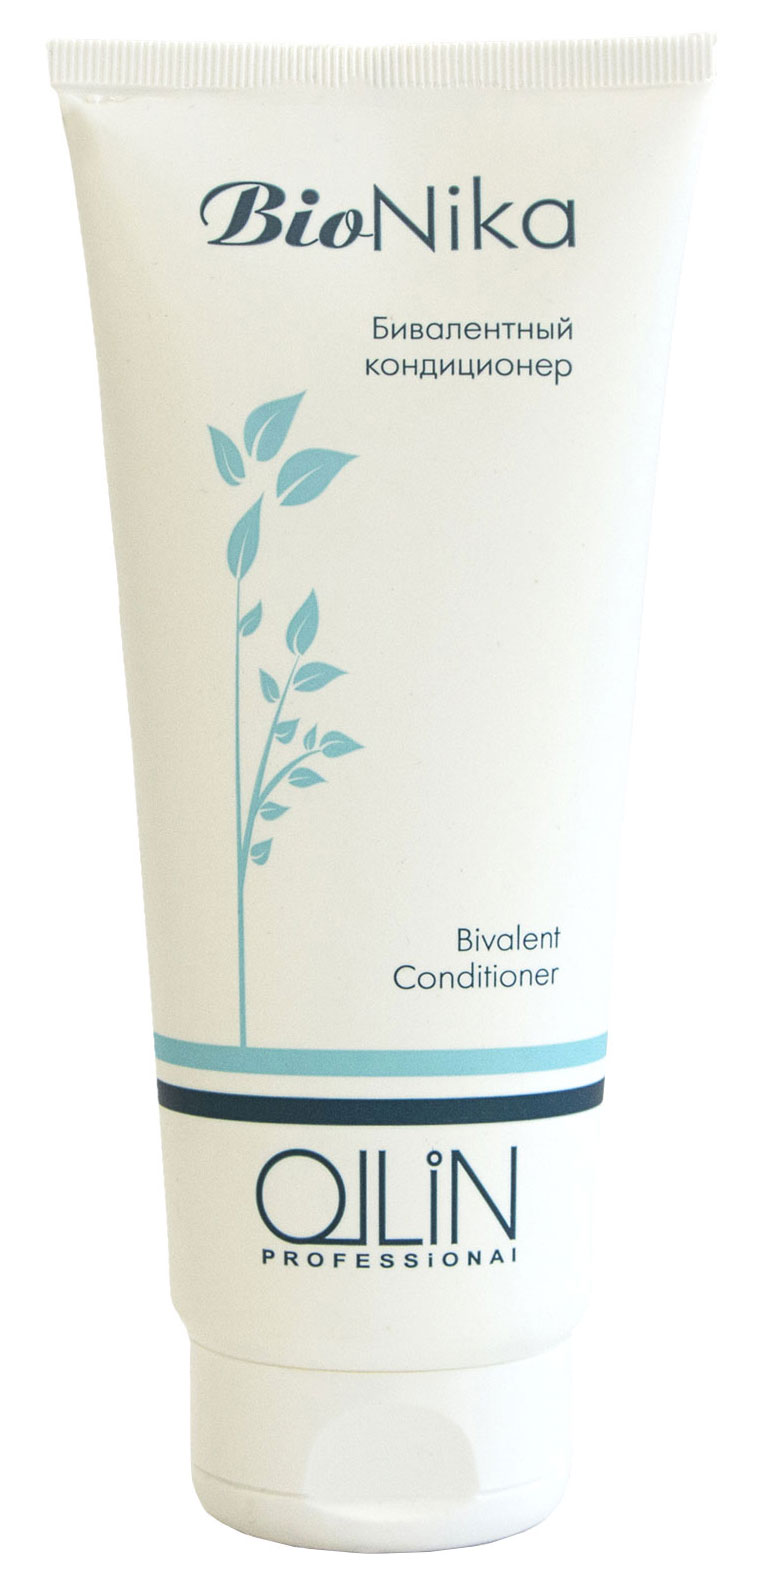 Кондиционер для волос Ollin Professional BioNika Bivalent 200 мл кондиционер для частого применения с экстрактом листьев камелии daily conditioner ollin basic line